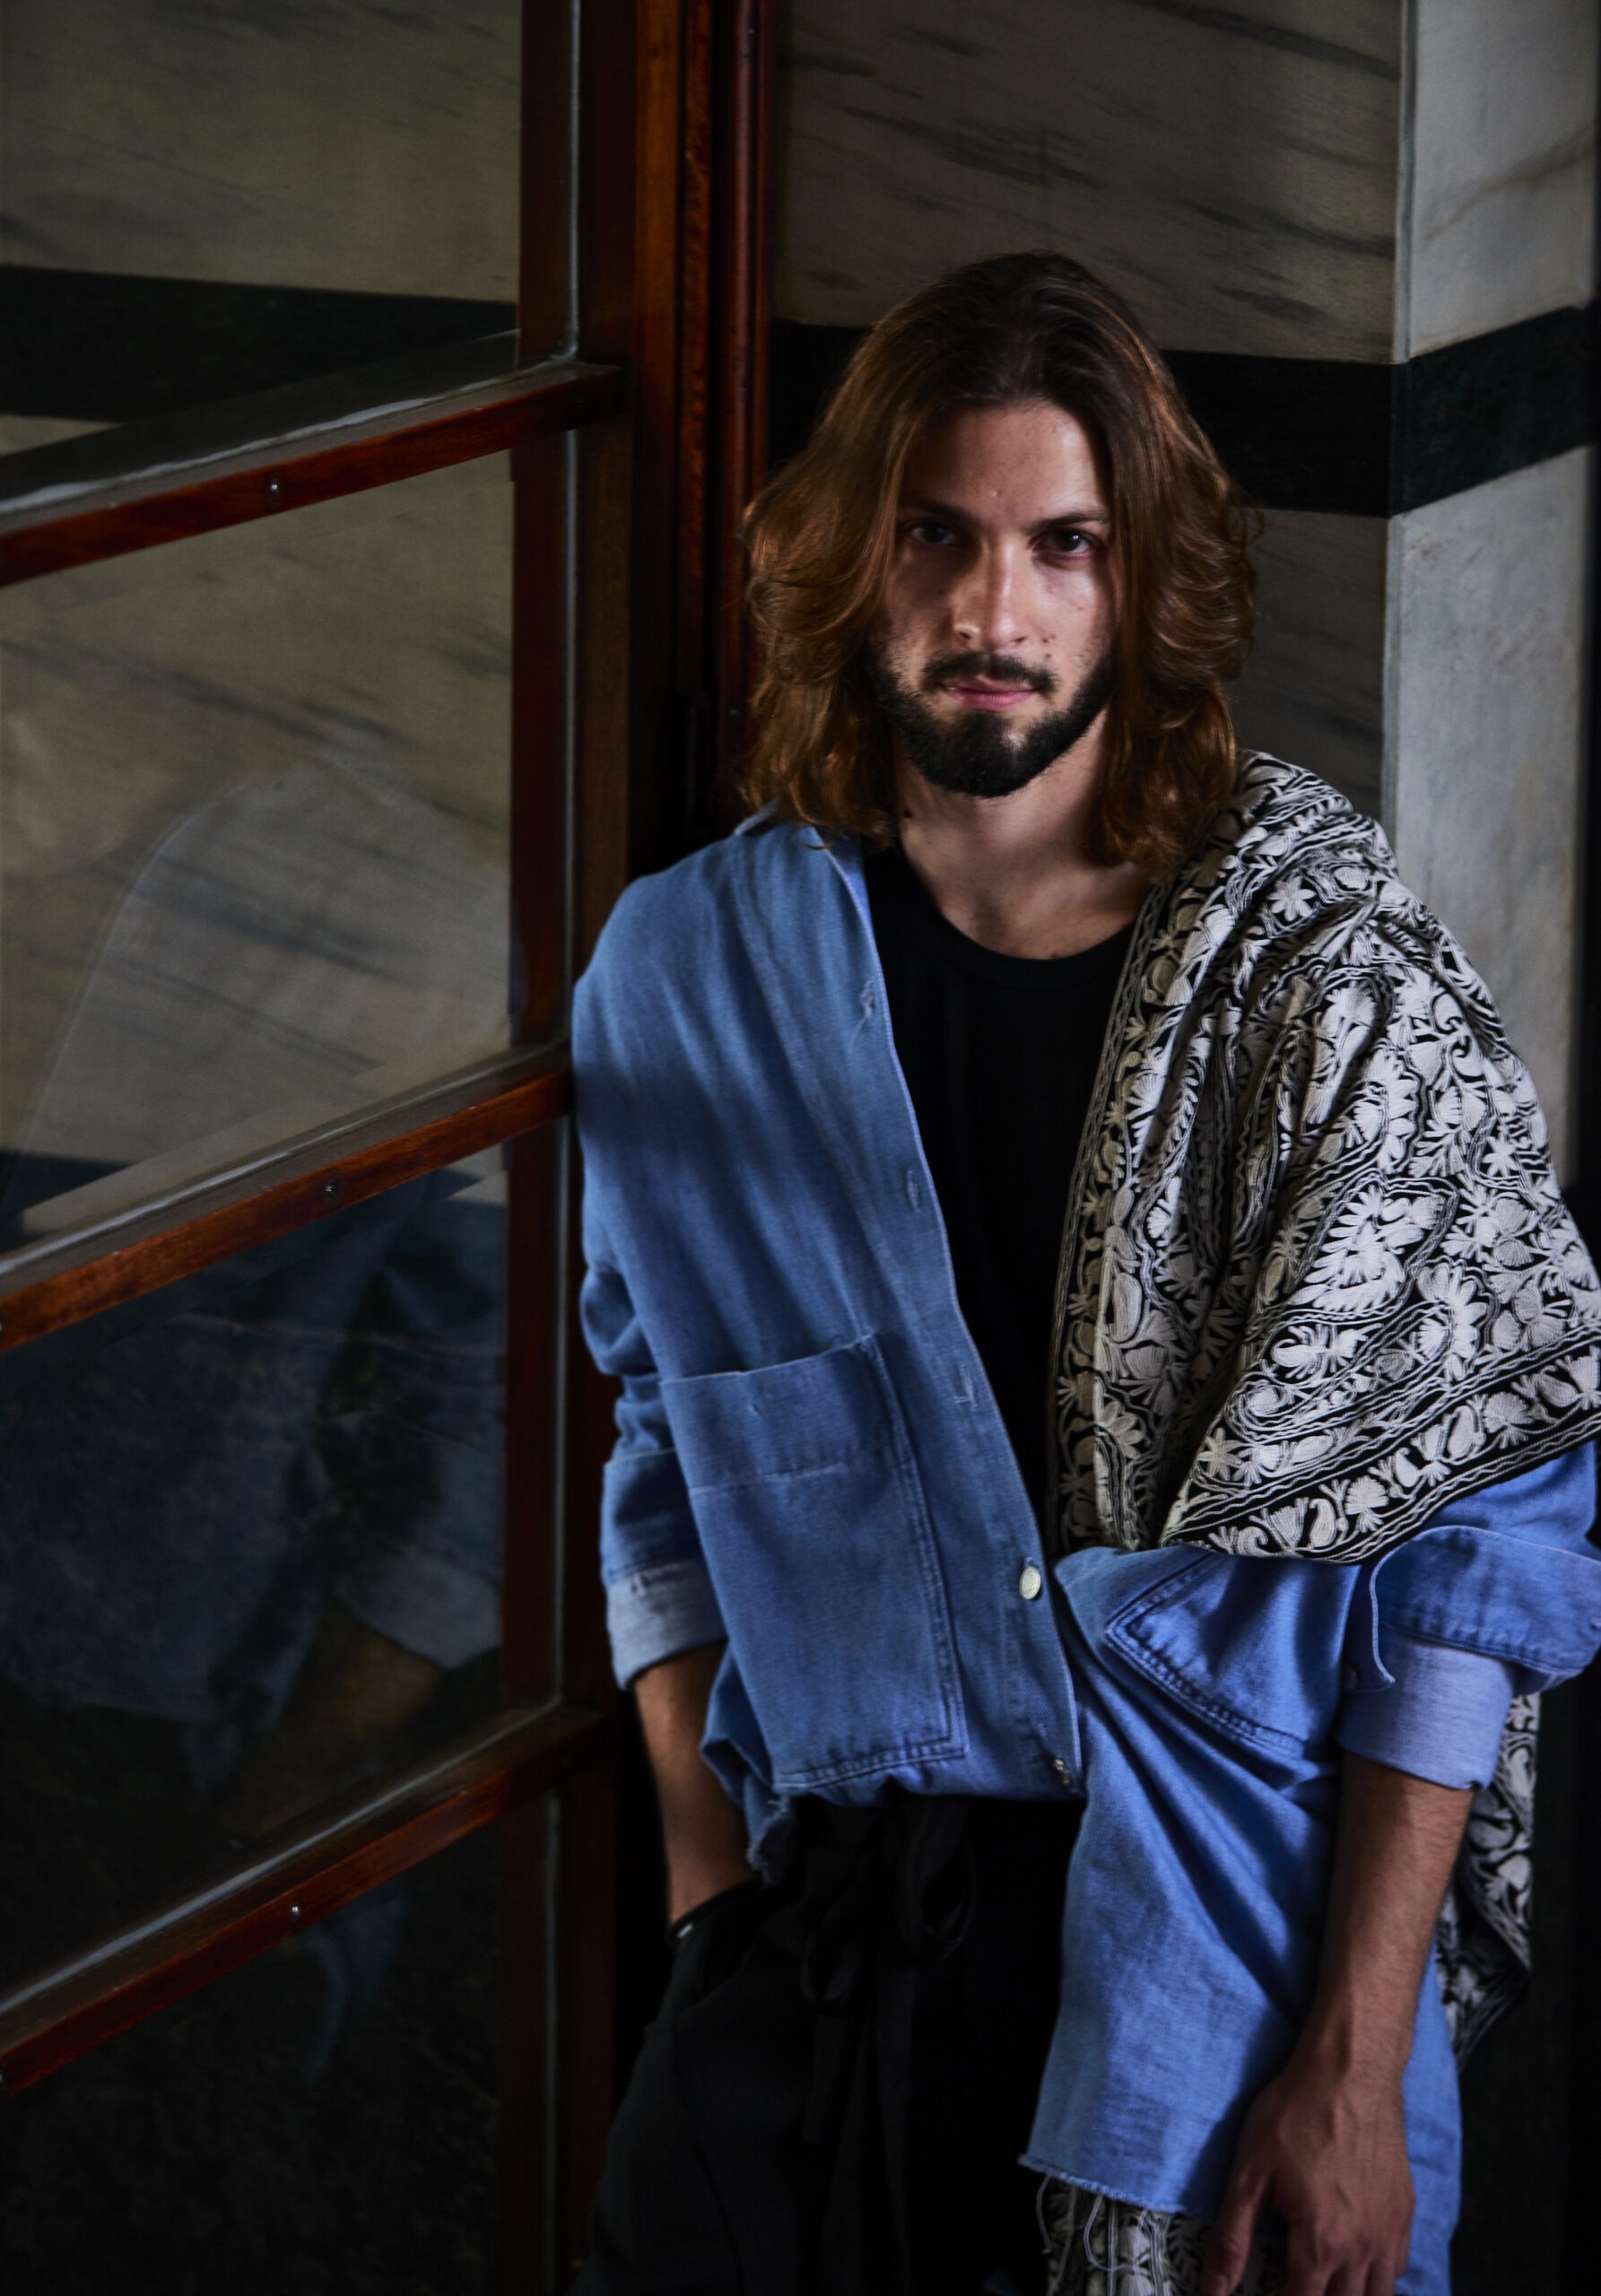 Italian Style: Interviewing the Fashion Designer Felipe Crivelenti